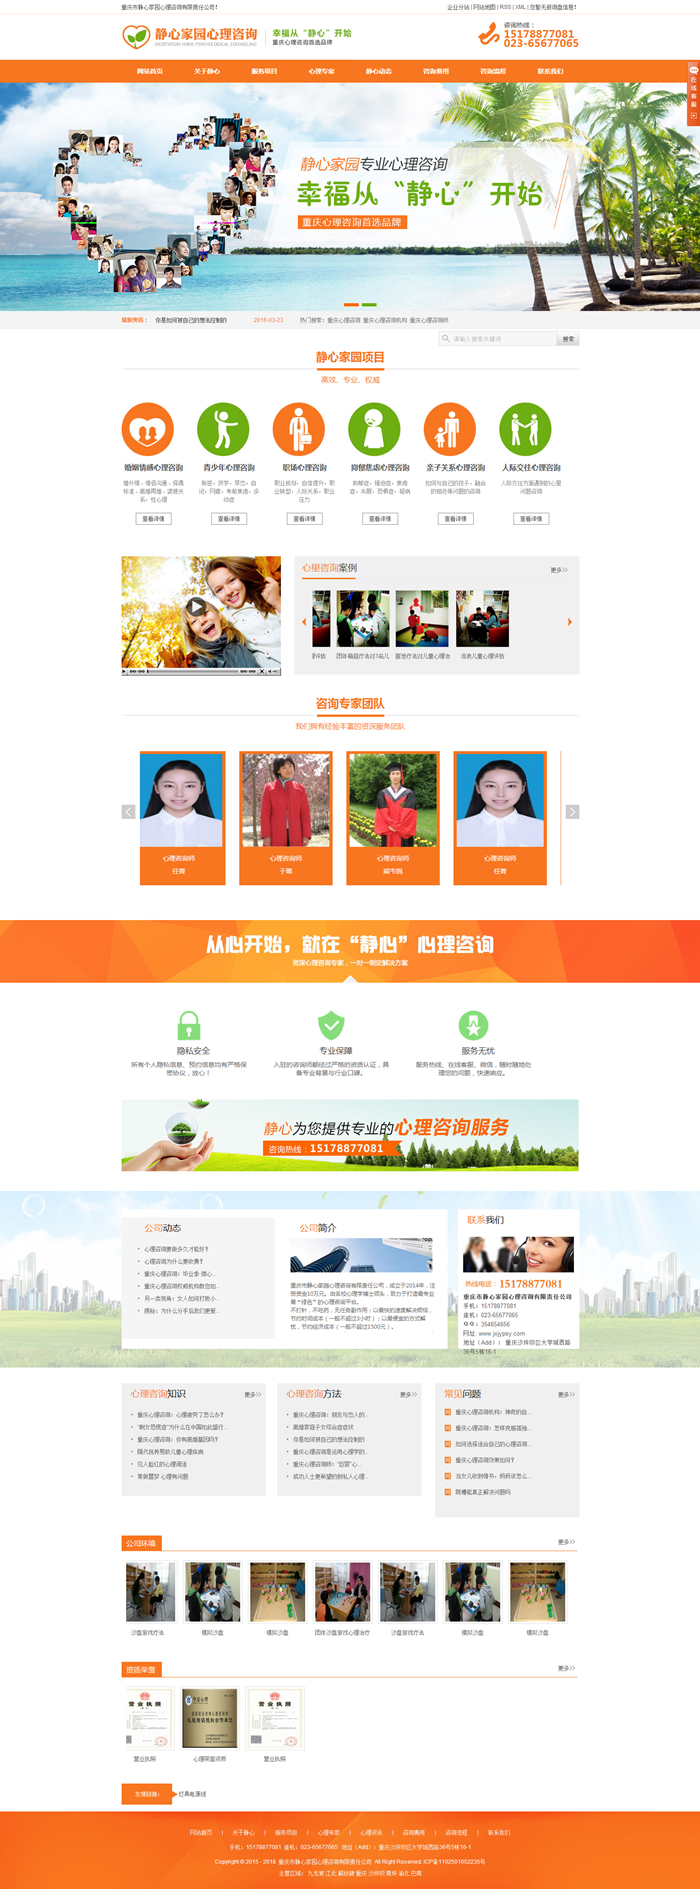 重庆网站建设案例